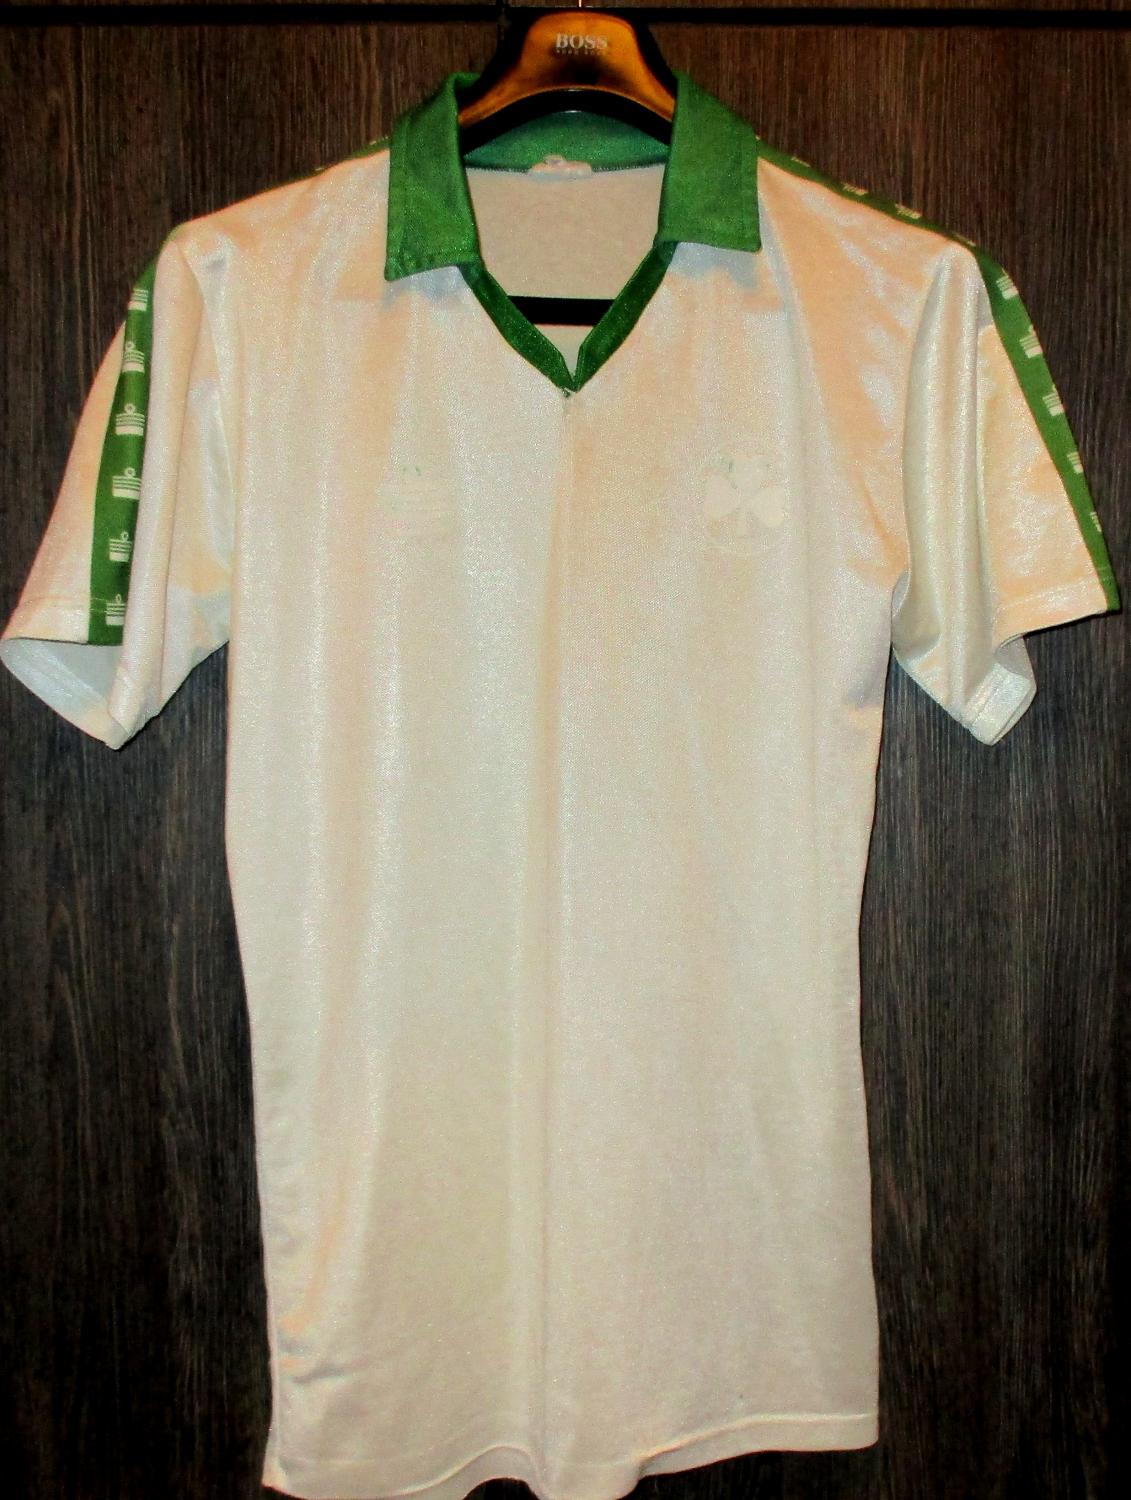 maillot de panathinaikos domicile 1981-1982 rétro